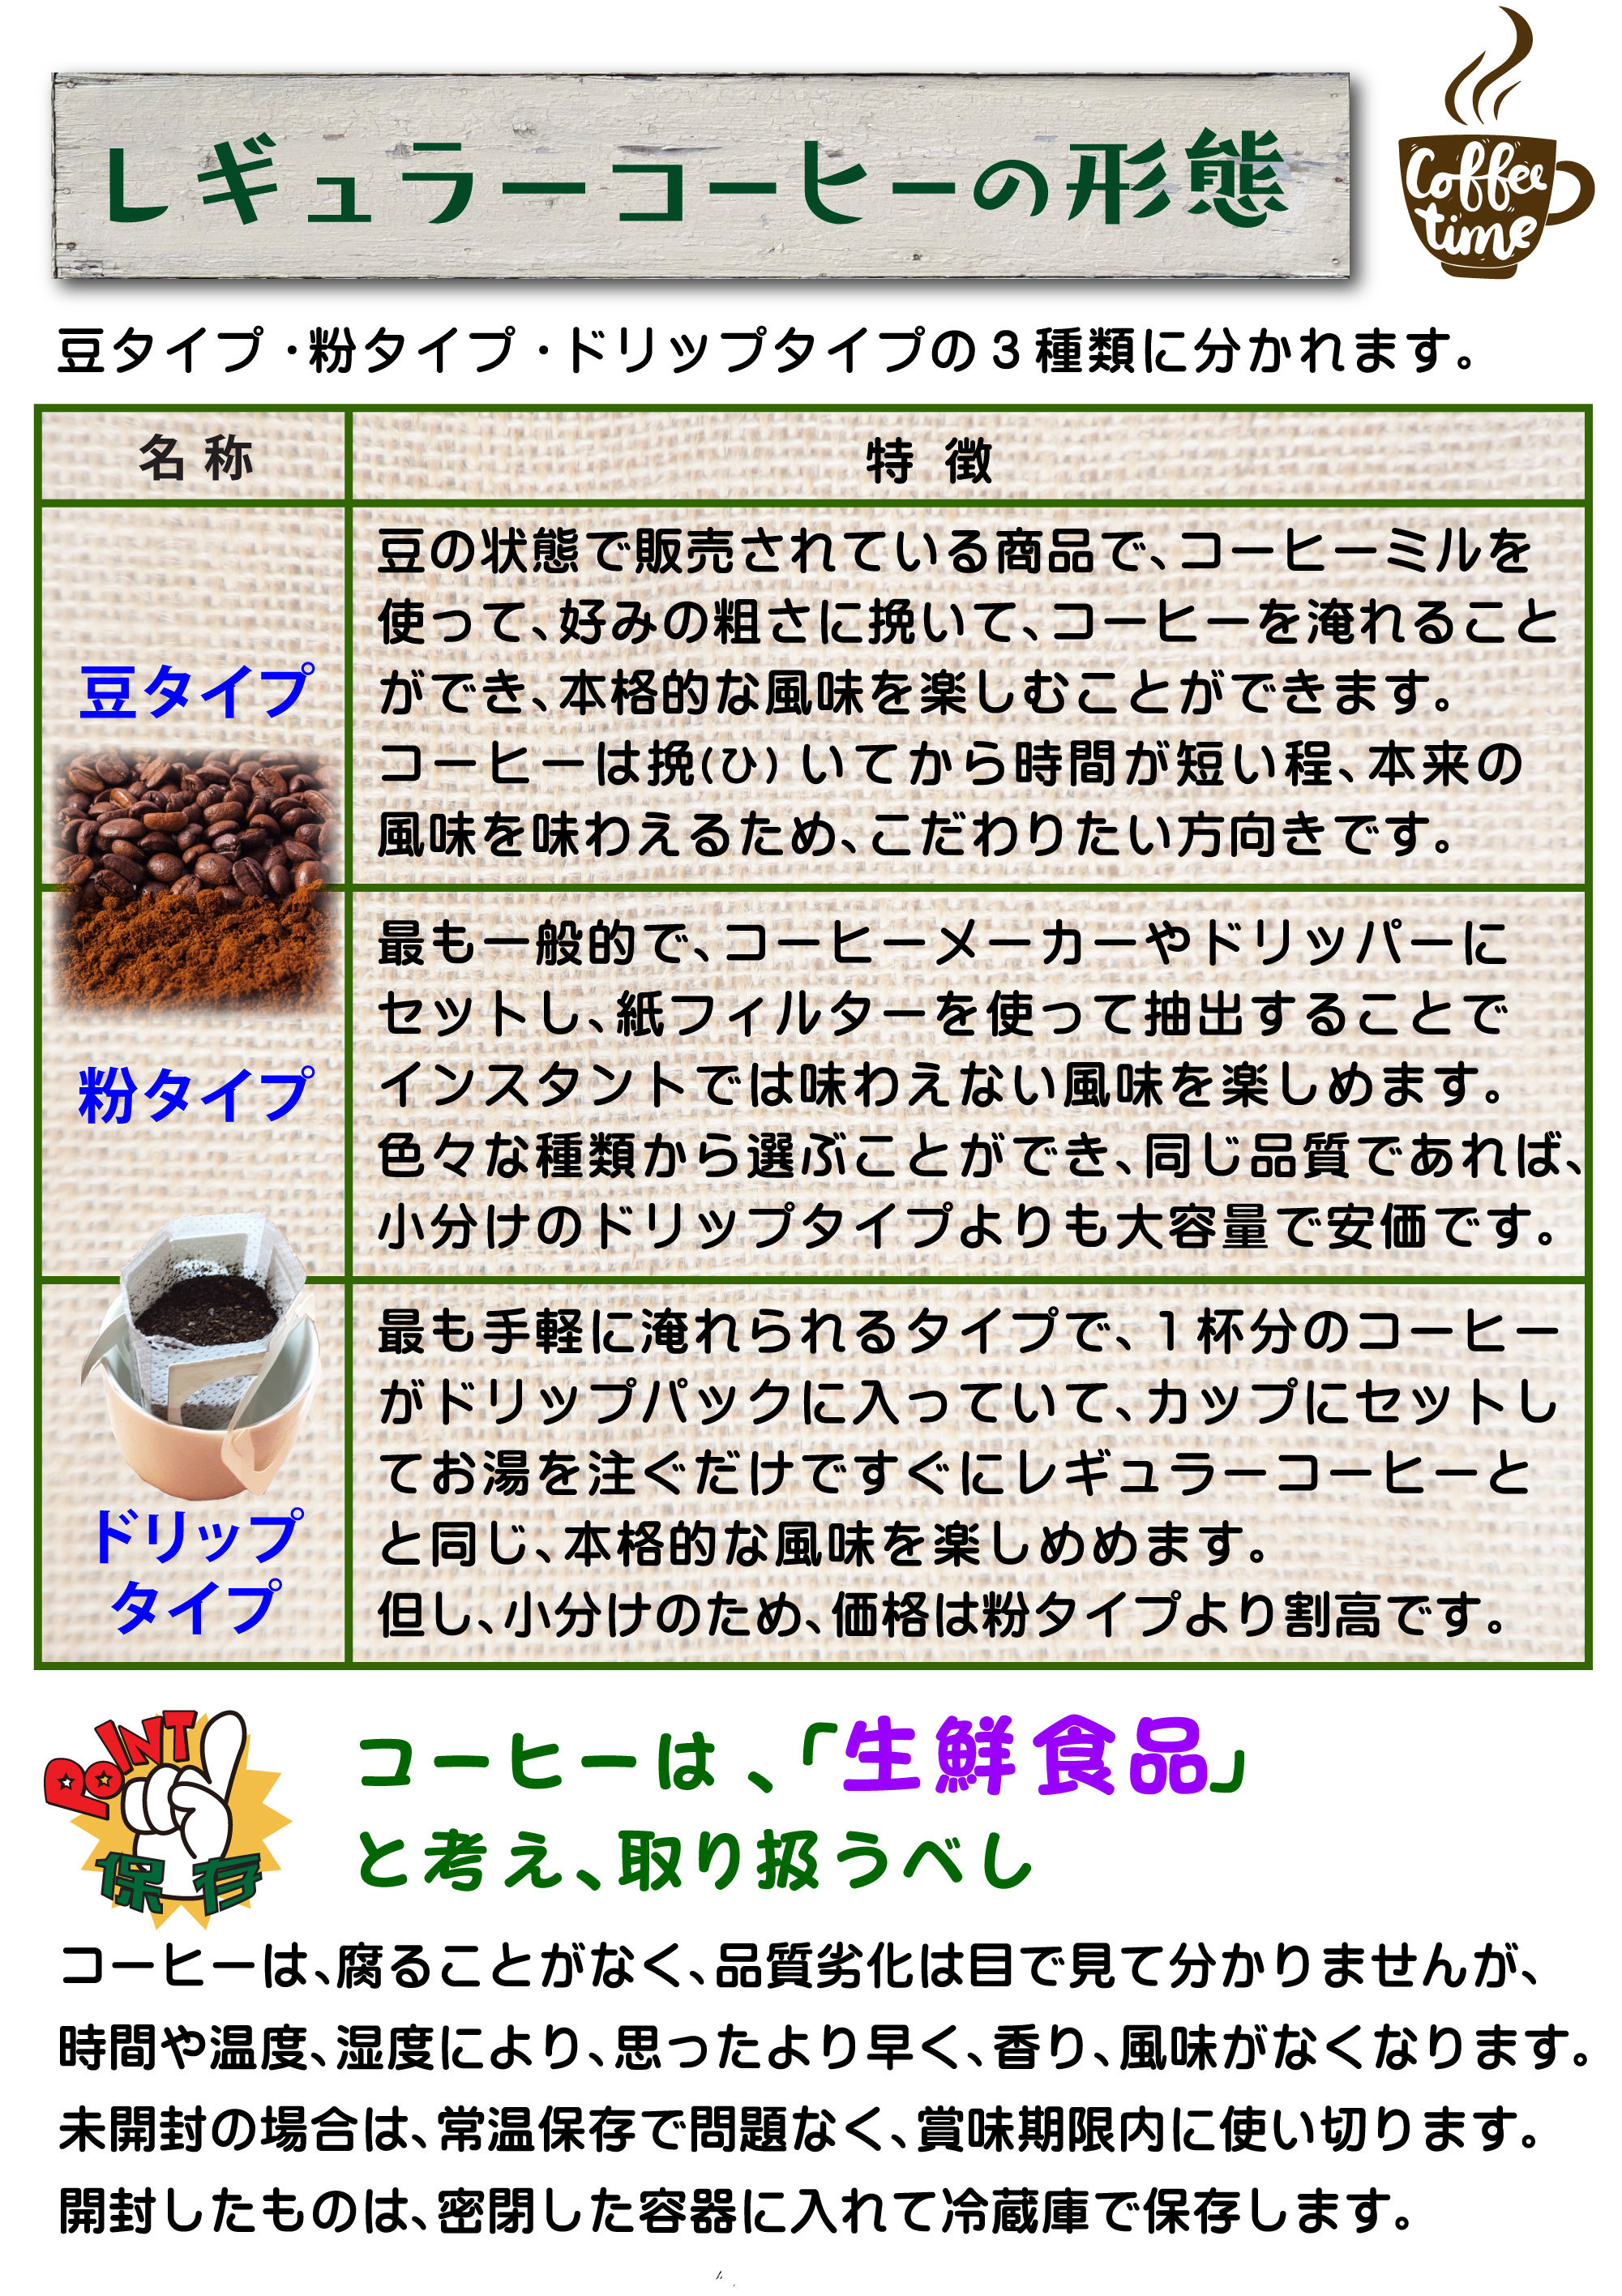 3~4_V95-レギュラーコーヒー(カラー)1